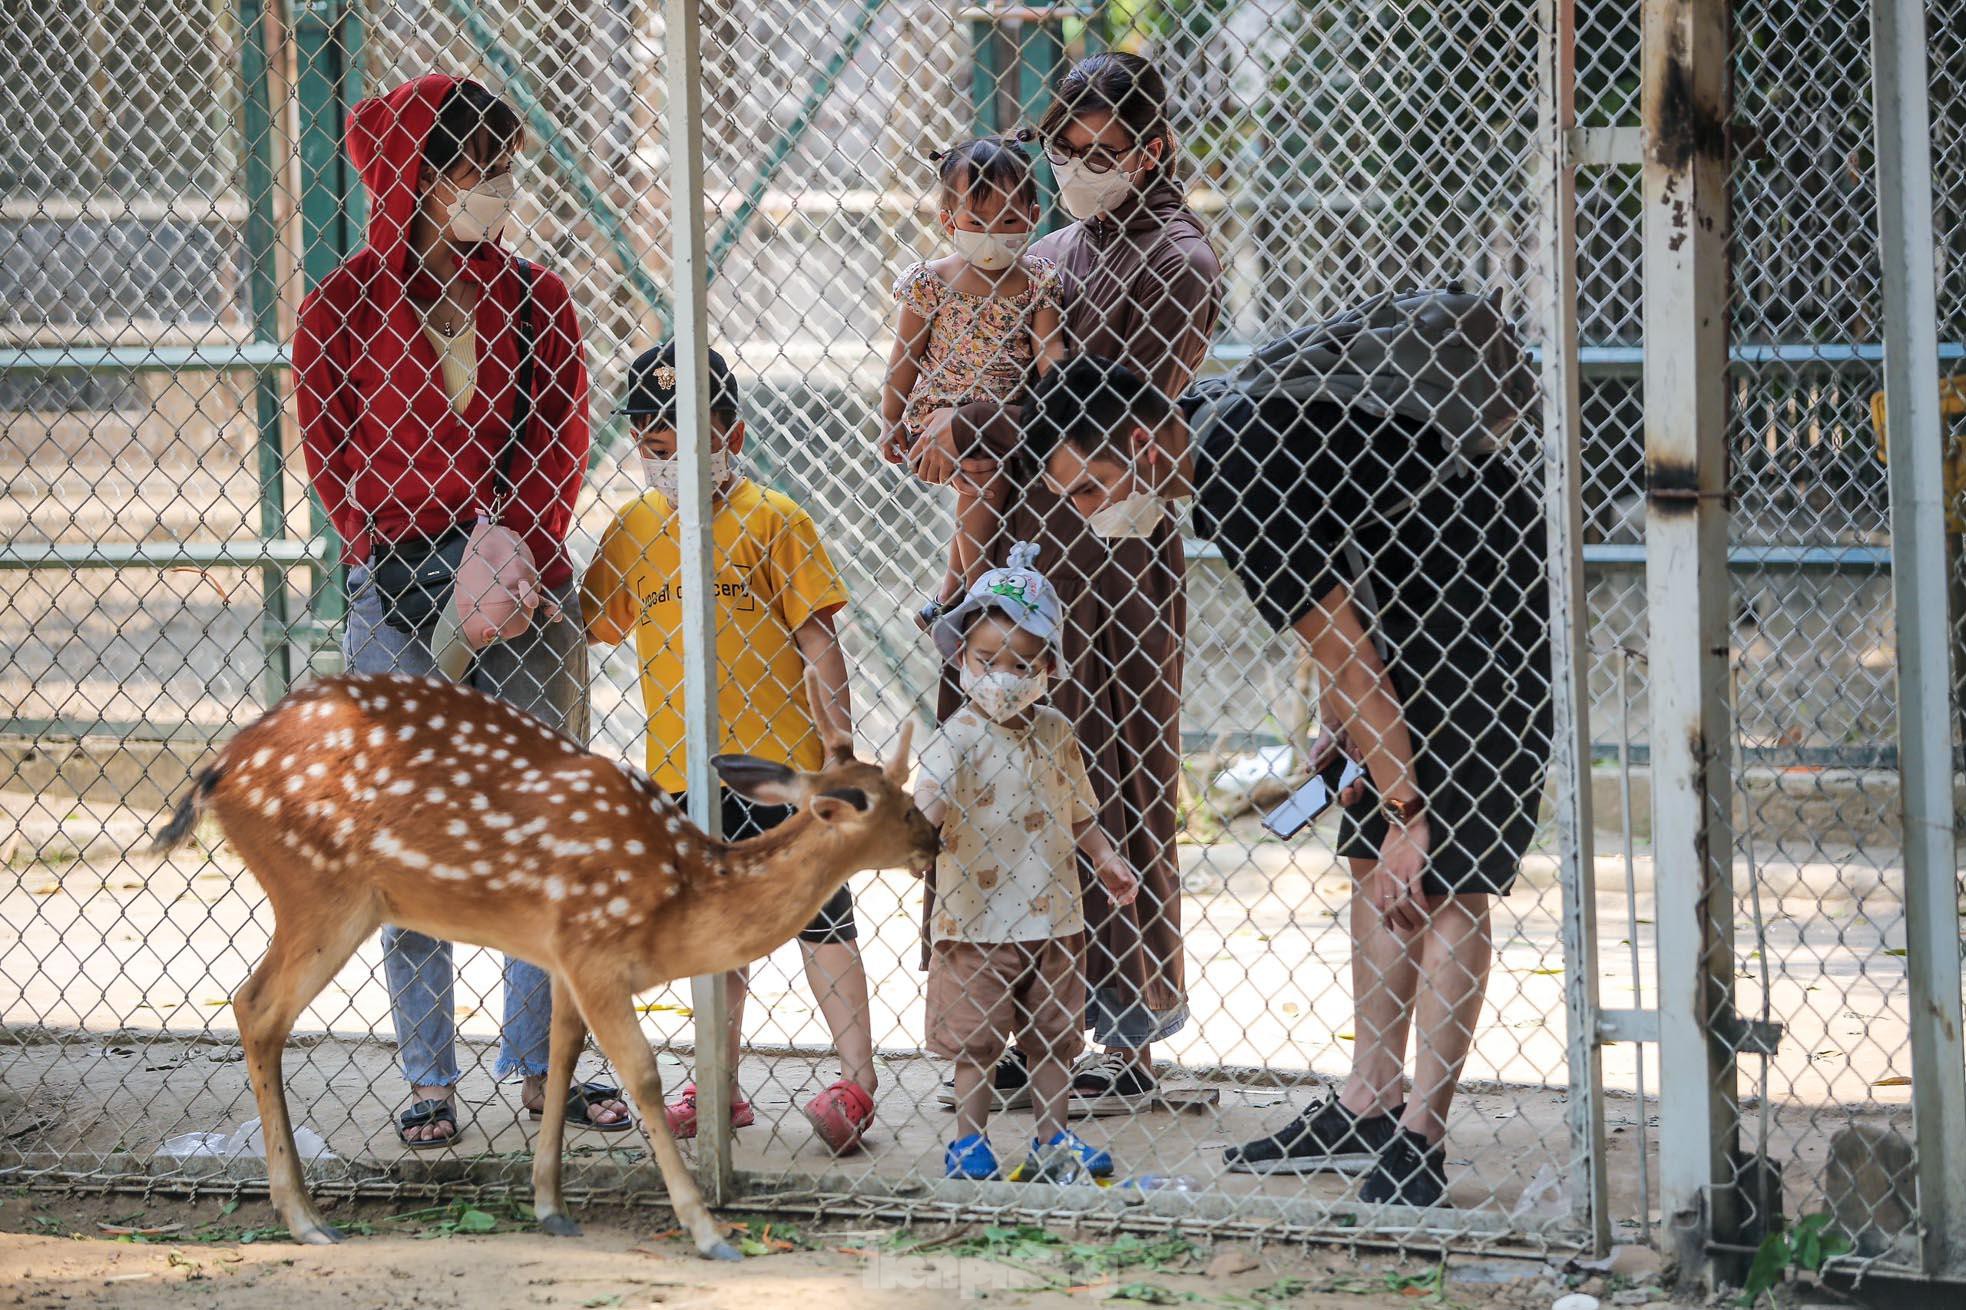 Ngàn người đổ về vườn thú Hà Nội trong ngày đầu nghỉ lễ - Ảnh 11.